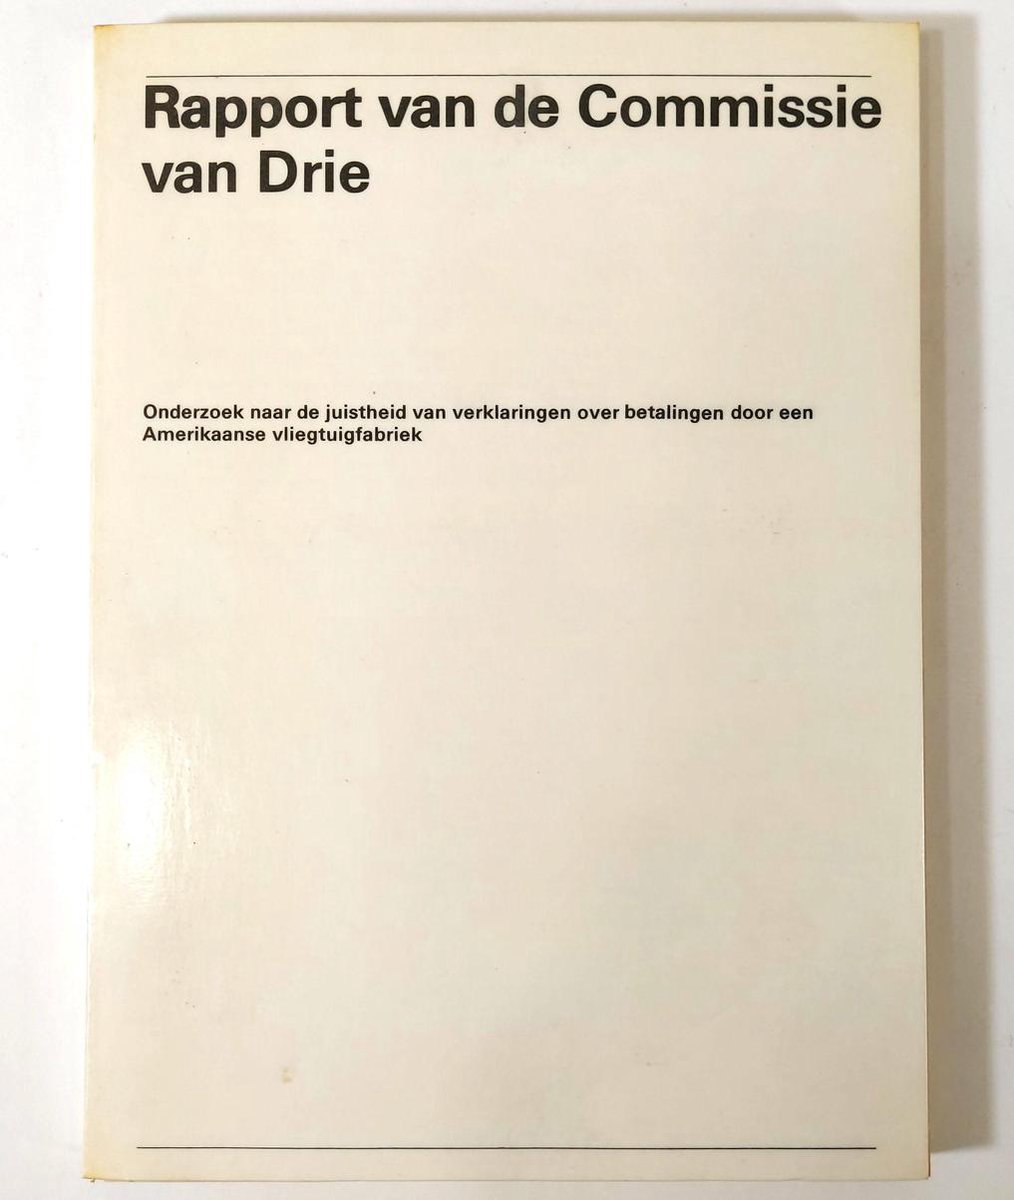 Rapport van de commissie van drie